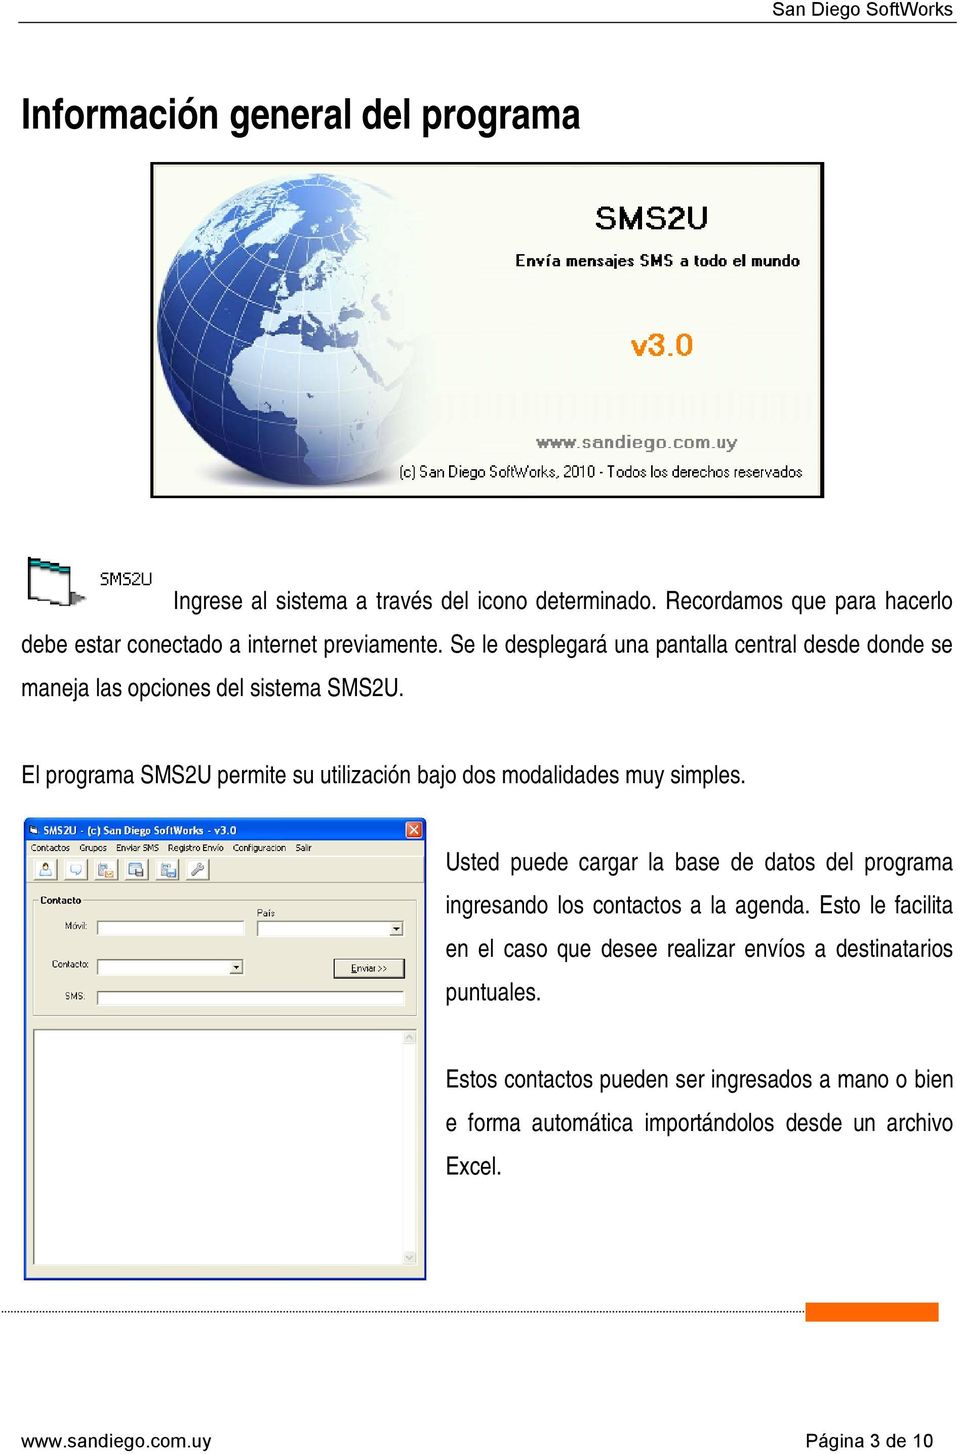 El programa SMS2U permite su utilización bajo dos modalidades muy simples.